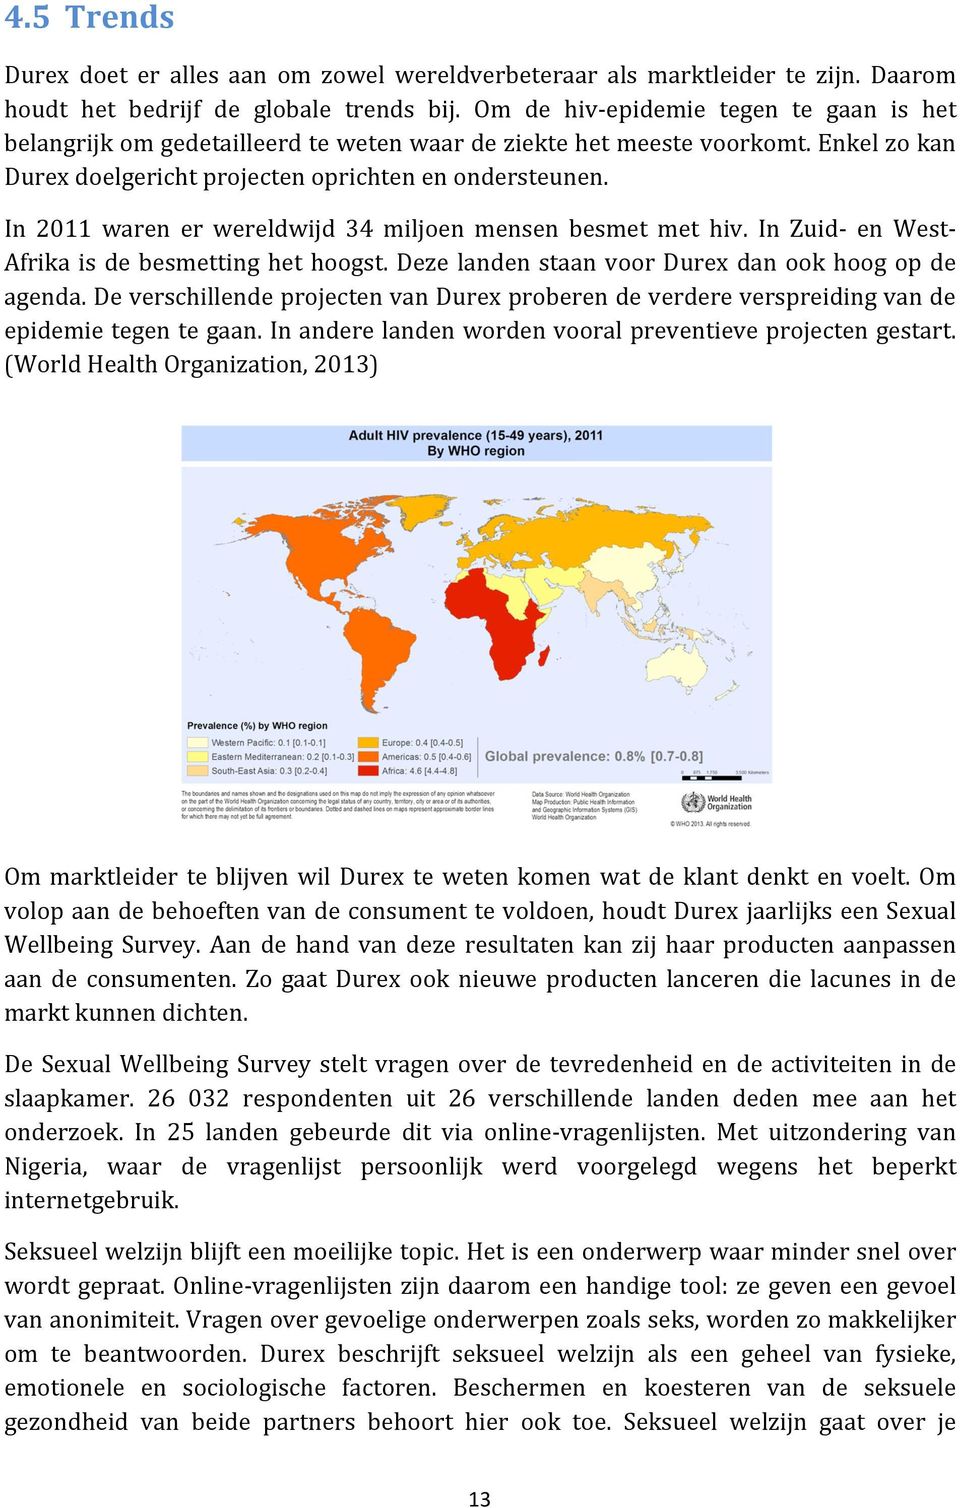 In 2011 waren er wereldwijd 34 miljoen mensen besmet met hiv. In Zuid- en West- Afrika is de besmetting het hoogst. Deze landen staan voor Durex dan ook hoog op de agenda.